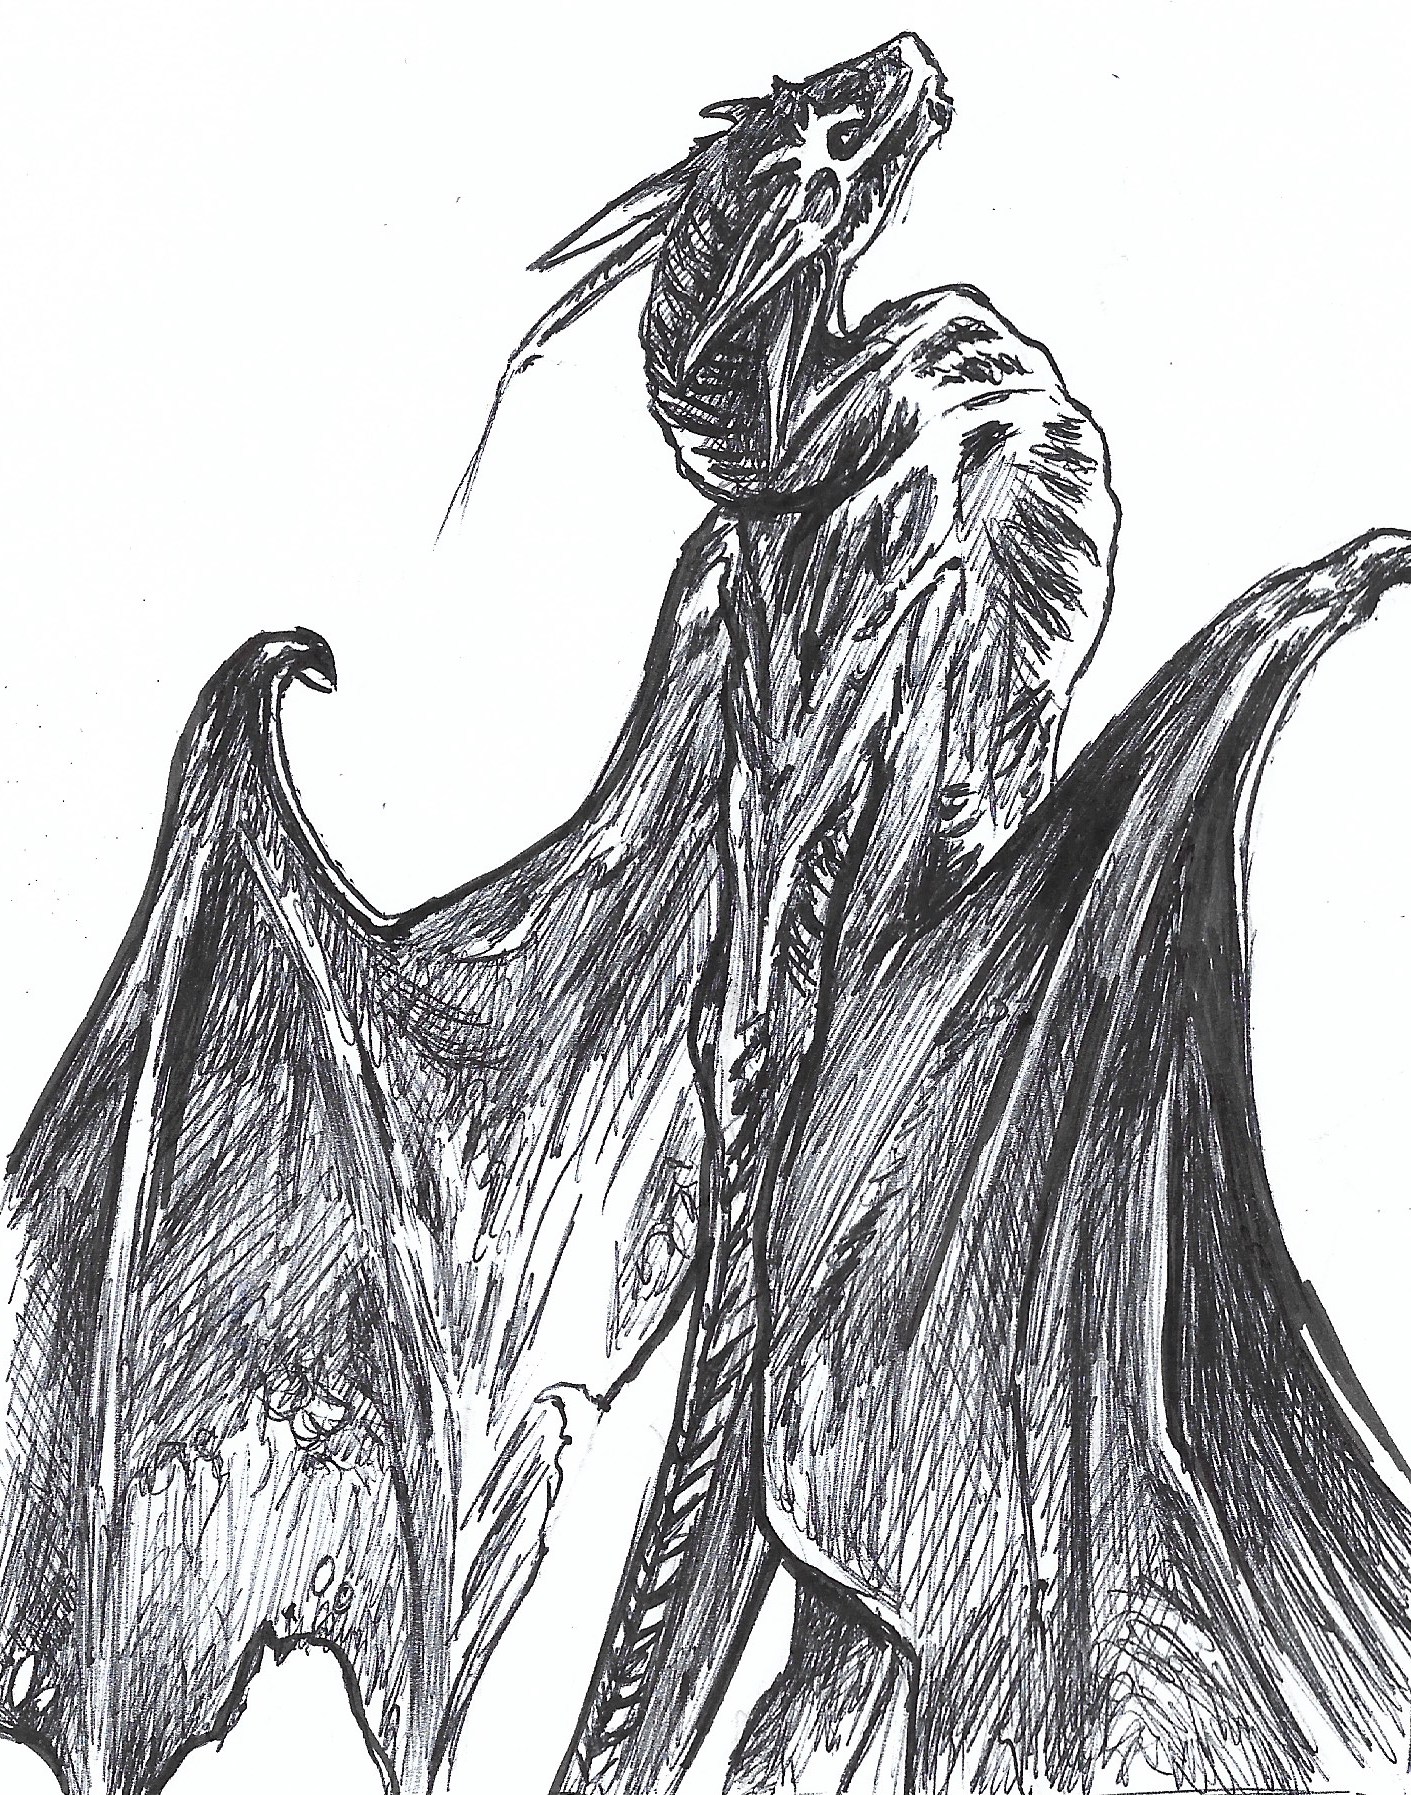 ©ART BOOK Dessin noir-blanc de Gilles,, d'un Dragon au milieu des flammes